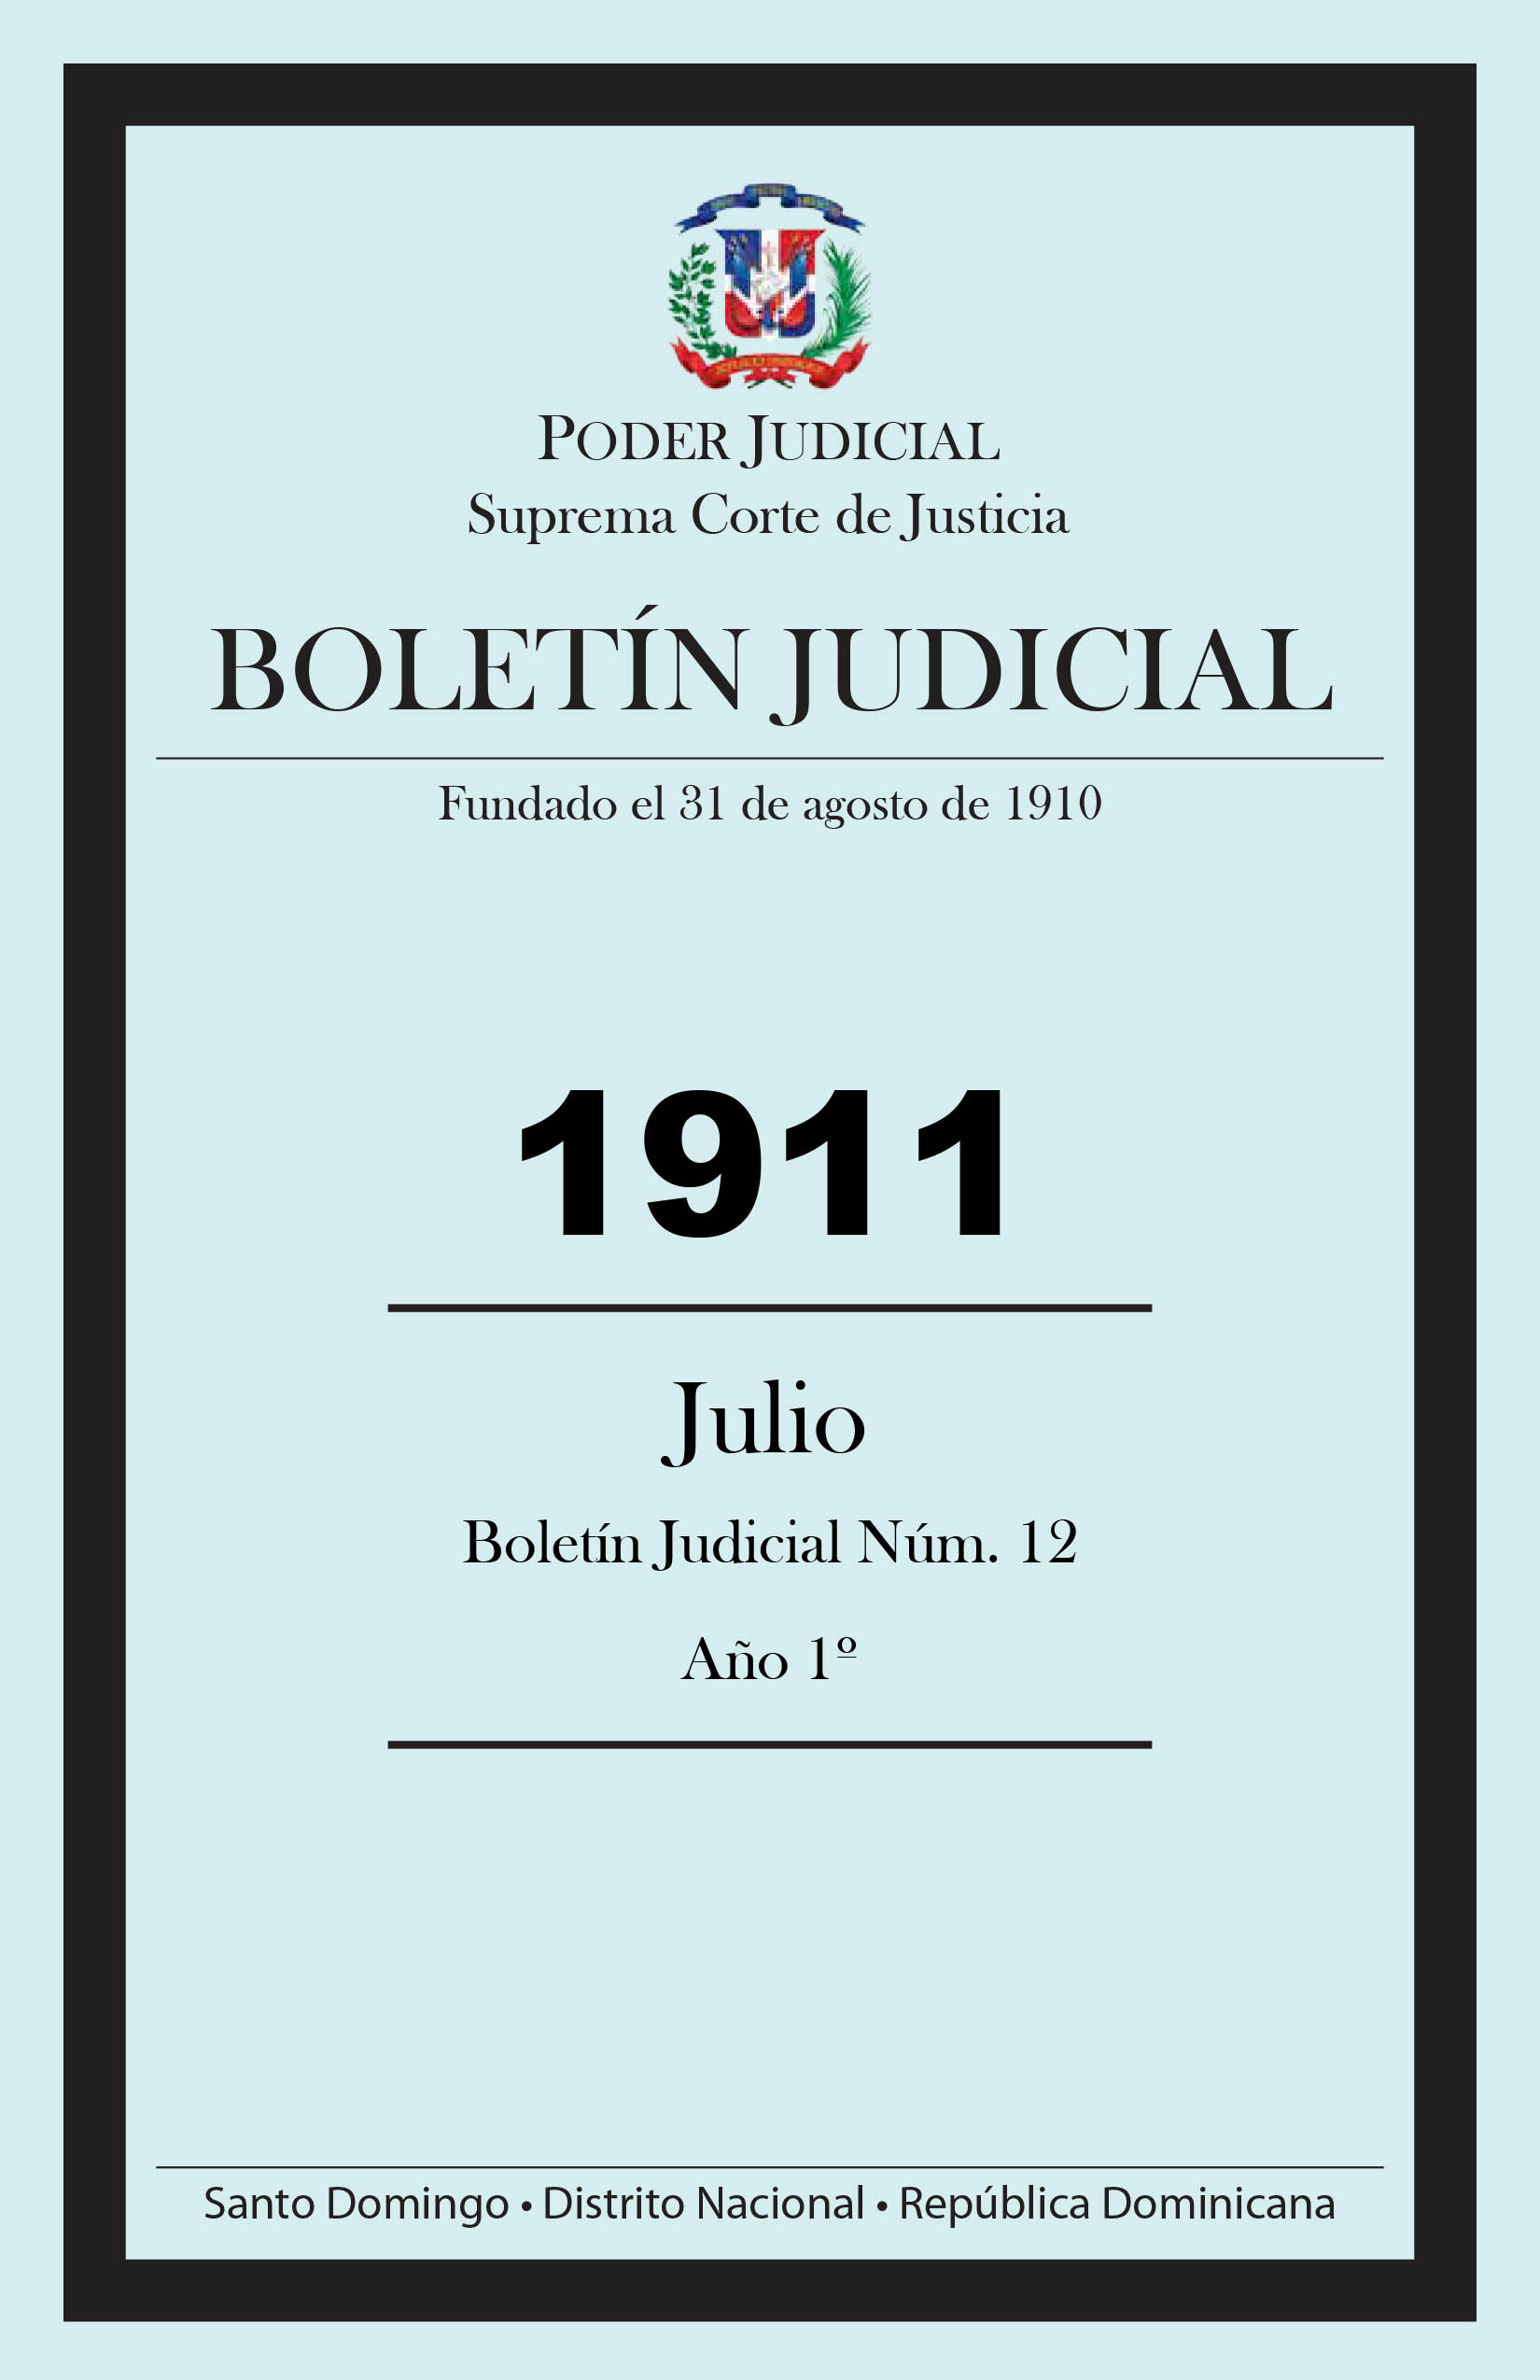 imegen correspondiente al mes JULIO del año 1911